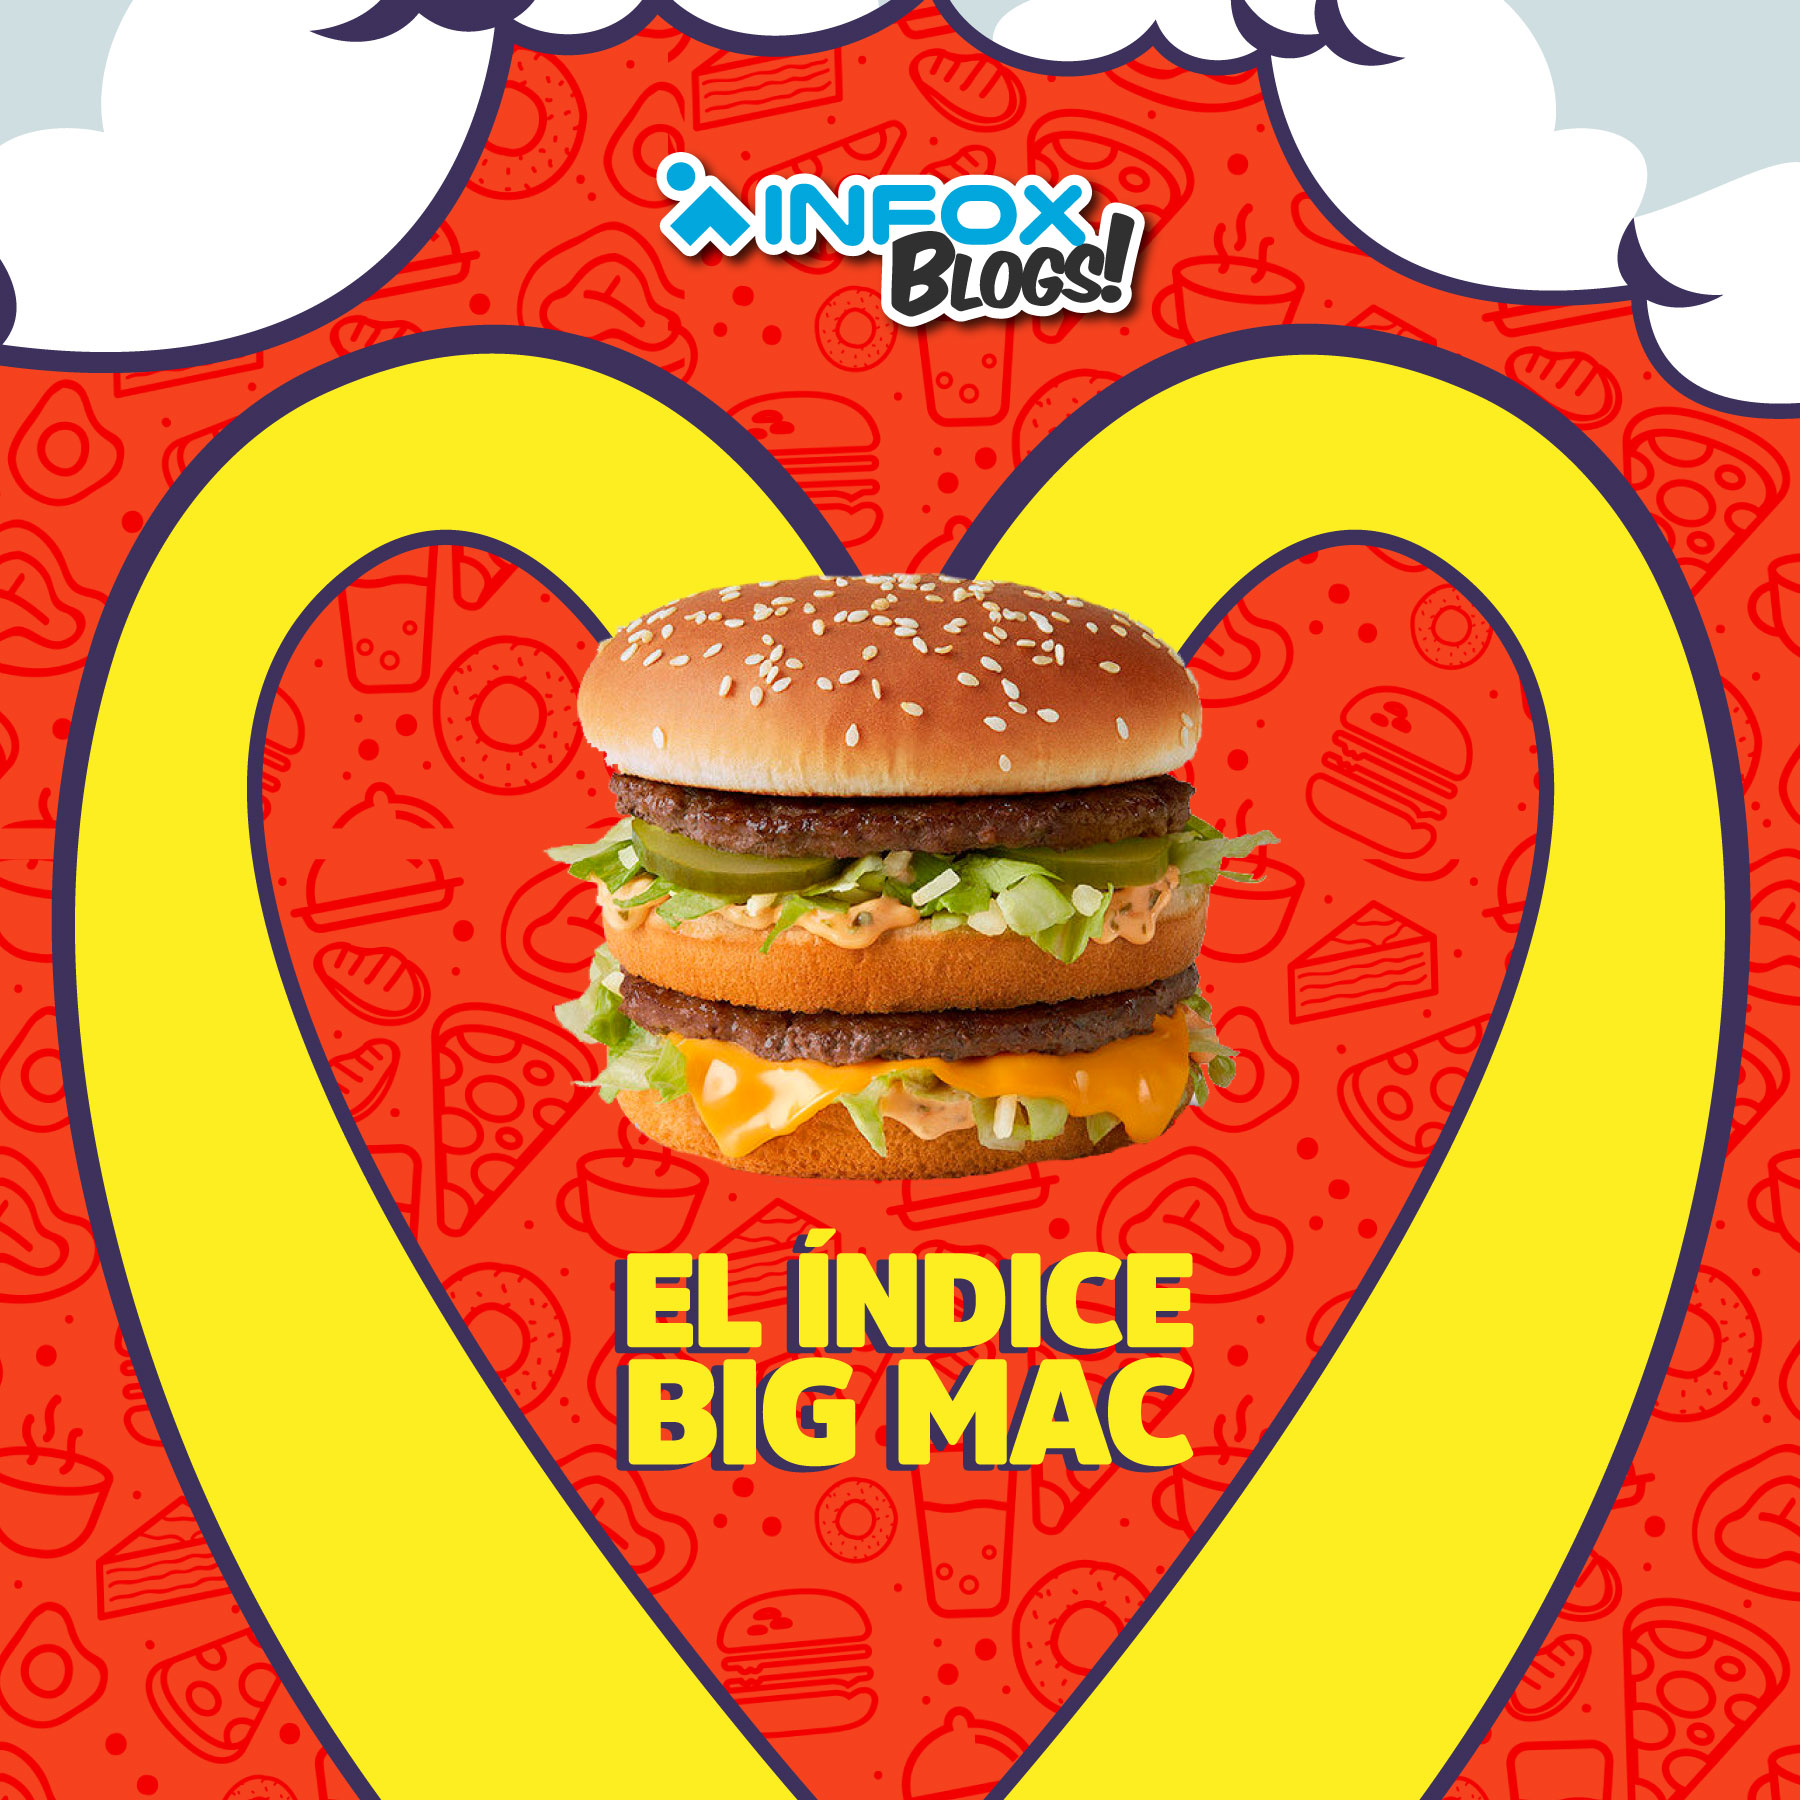 El Índice Big Mac Infox 5553